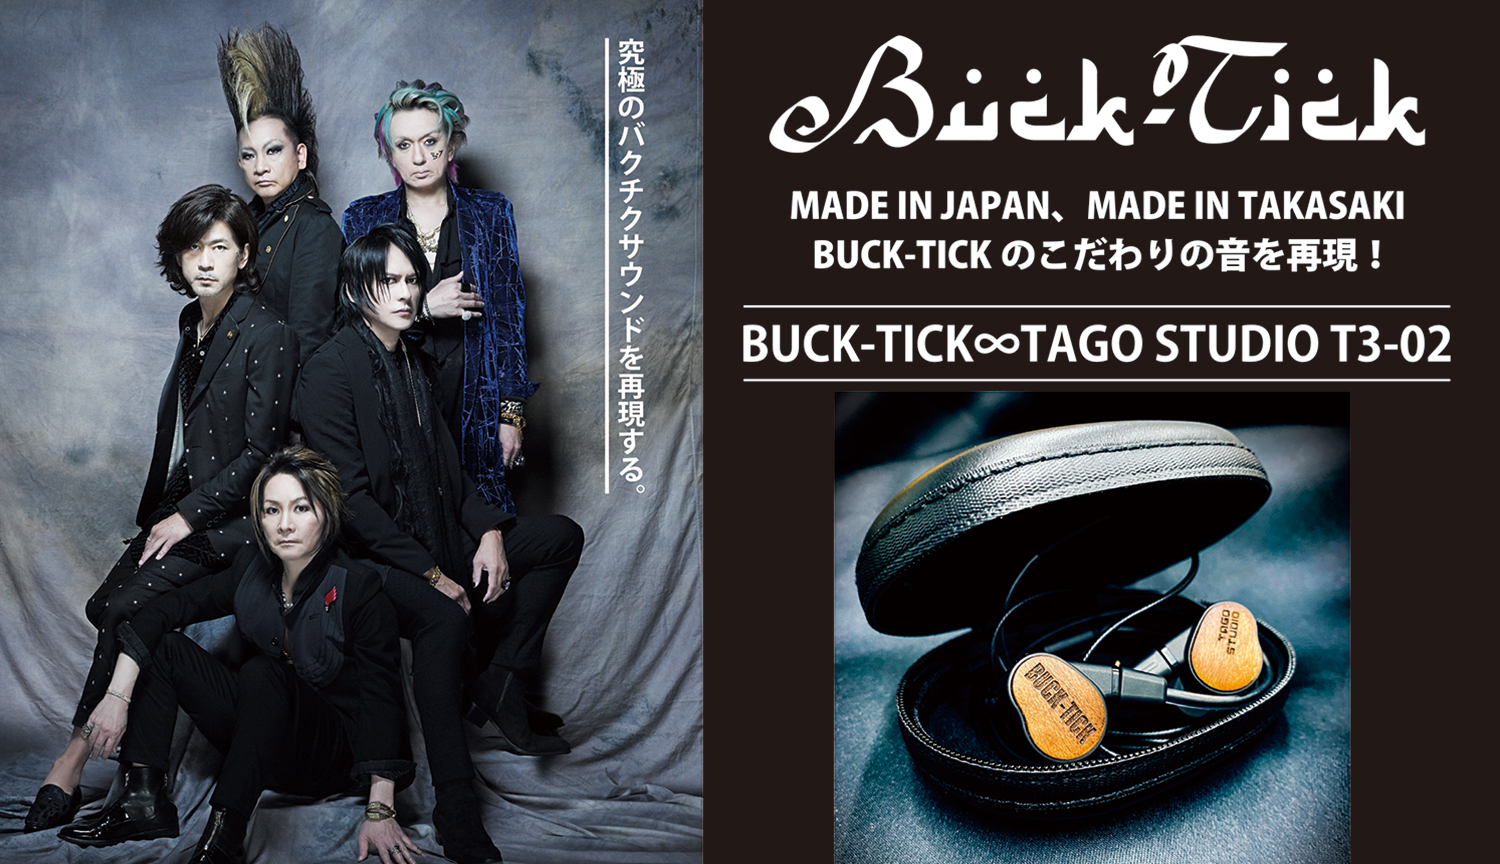 BUCK-TICK∞TAGO STUDIO T3-02